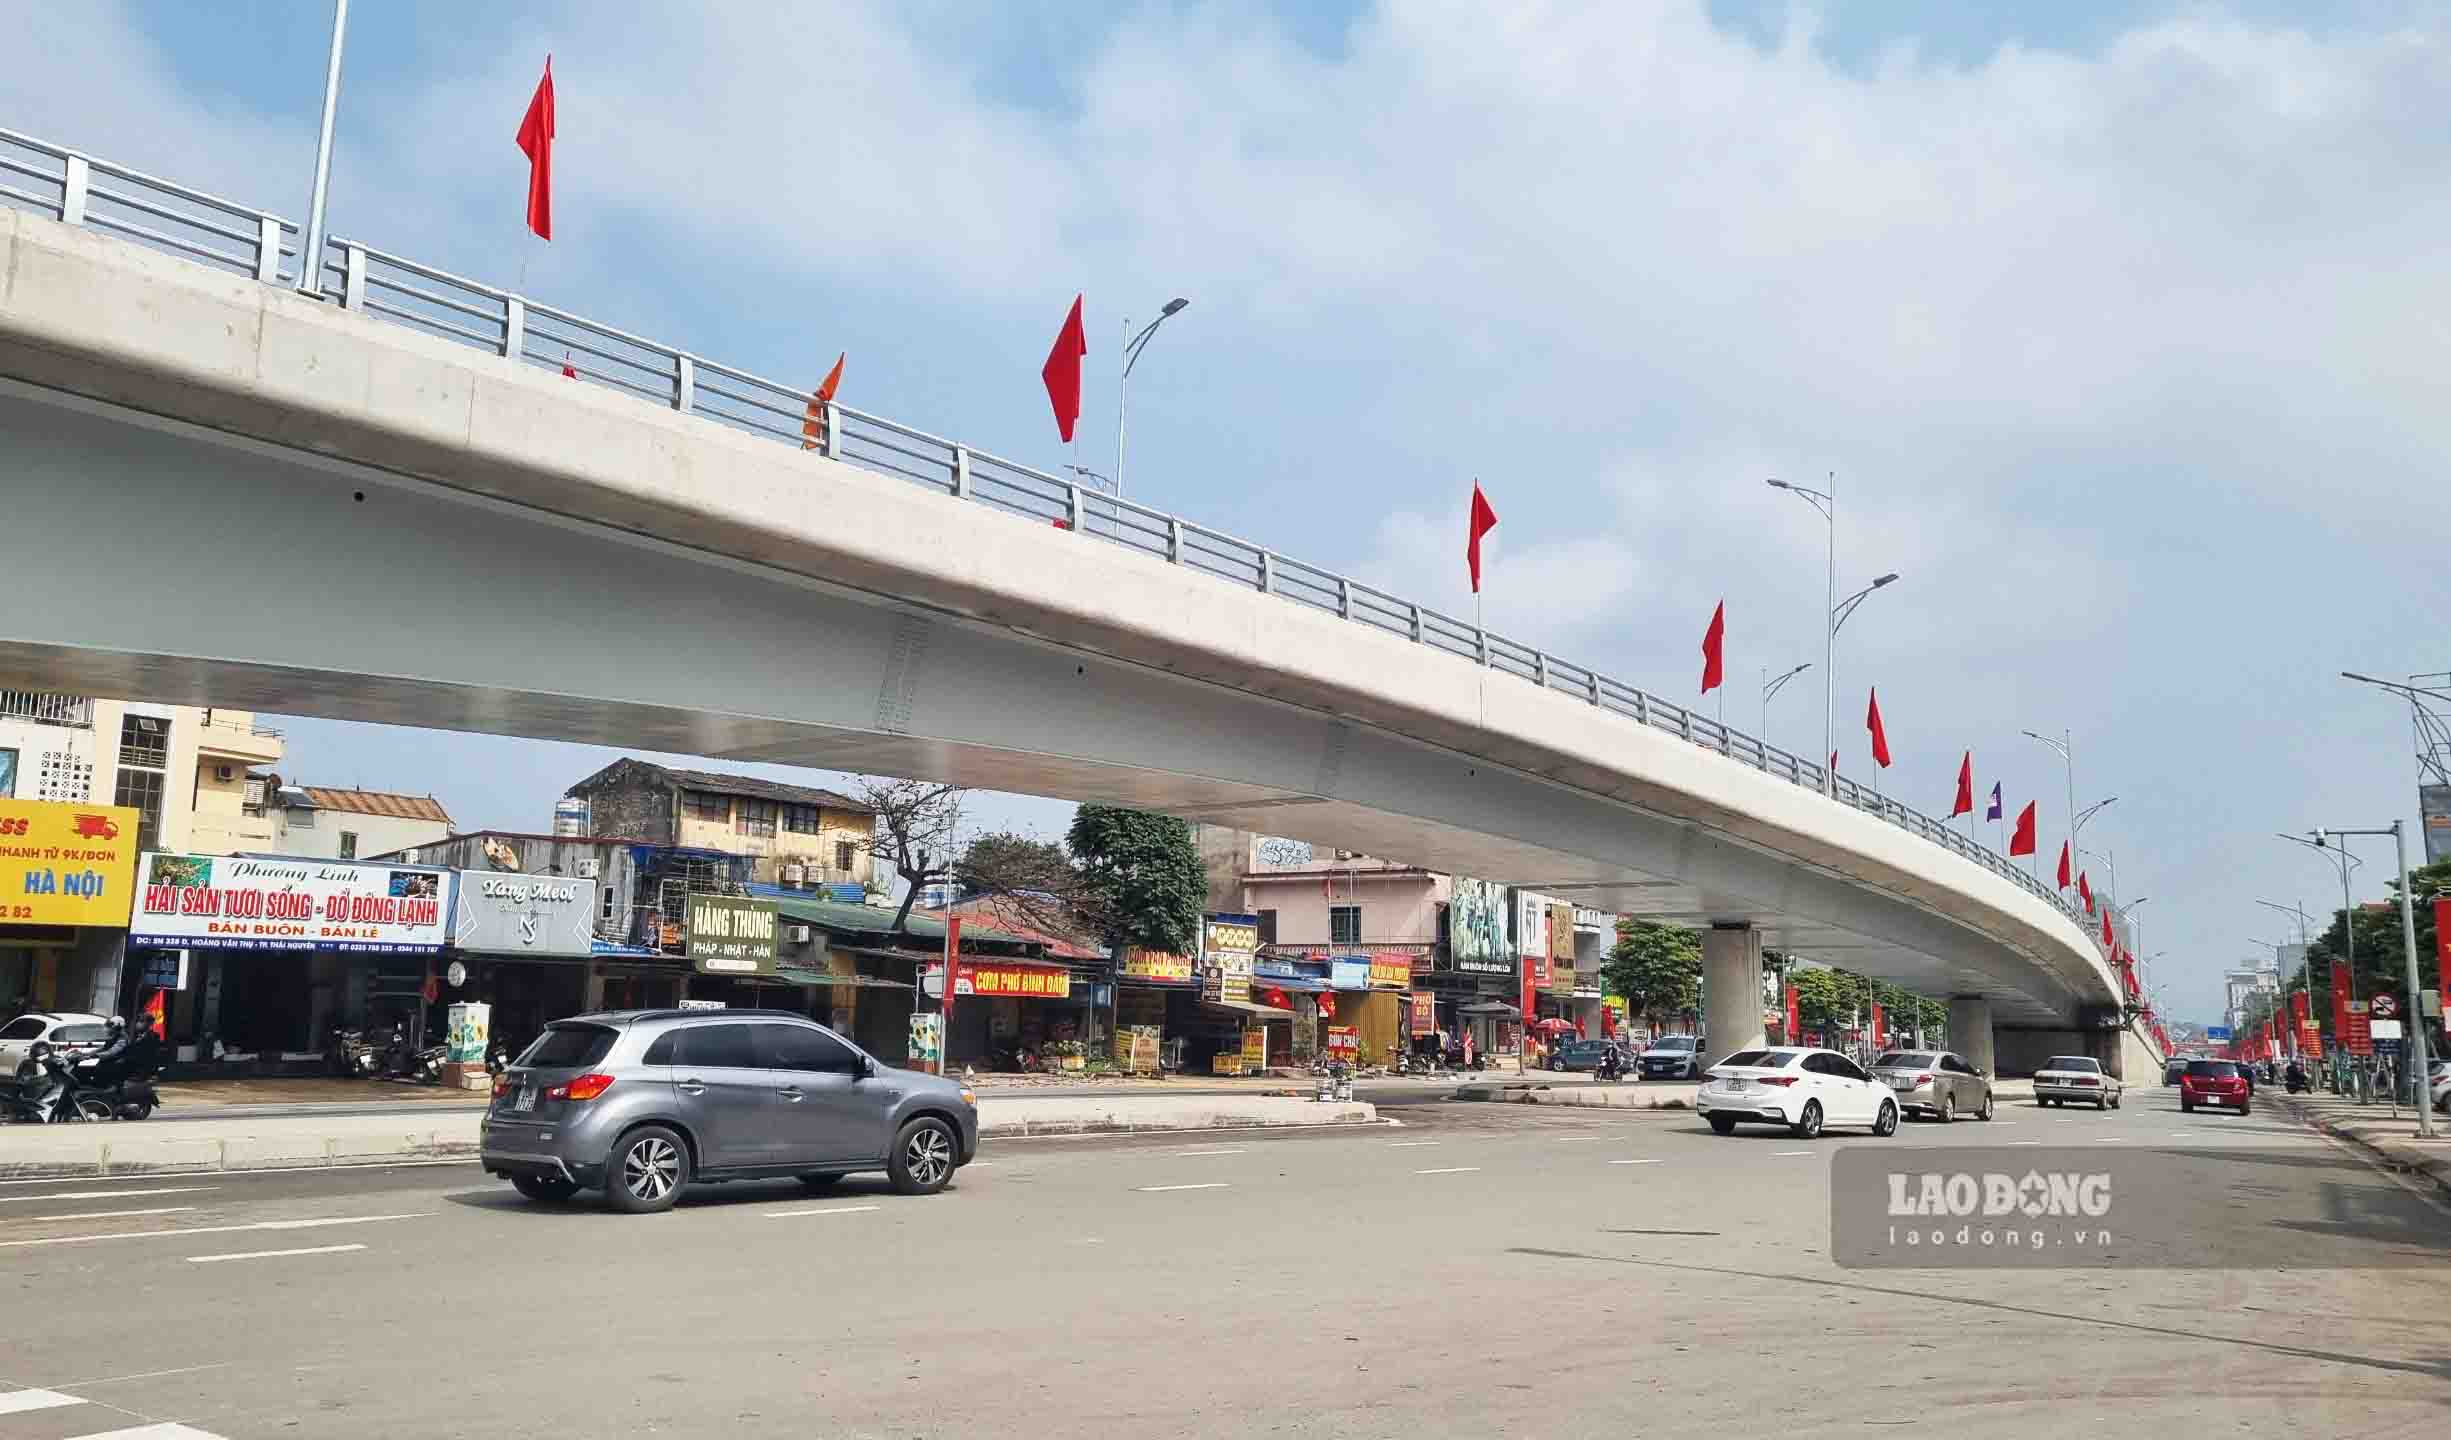 Đây cũng là cây cầu vượt có kết cấu dầm thép đầu tiên tại tỉnh Thái Nguyên với tổng chiều dài tuyến 620m gồm 6 nhịp dầm hộp thép liên hợp.